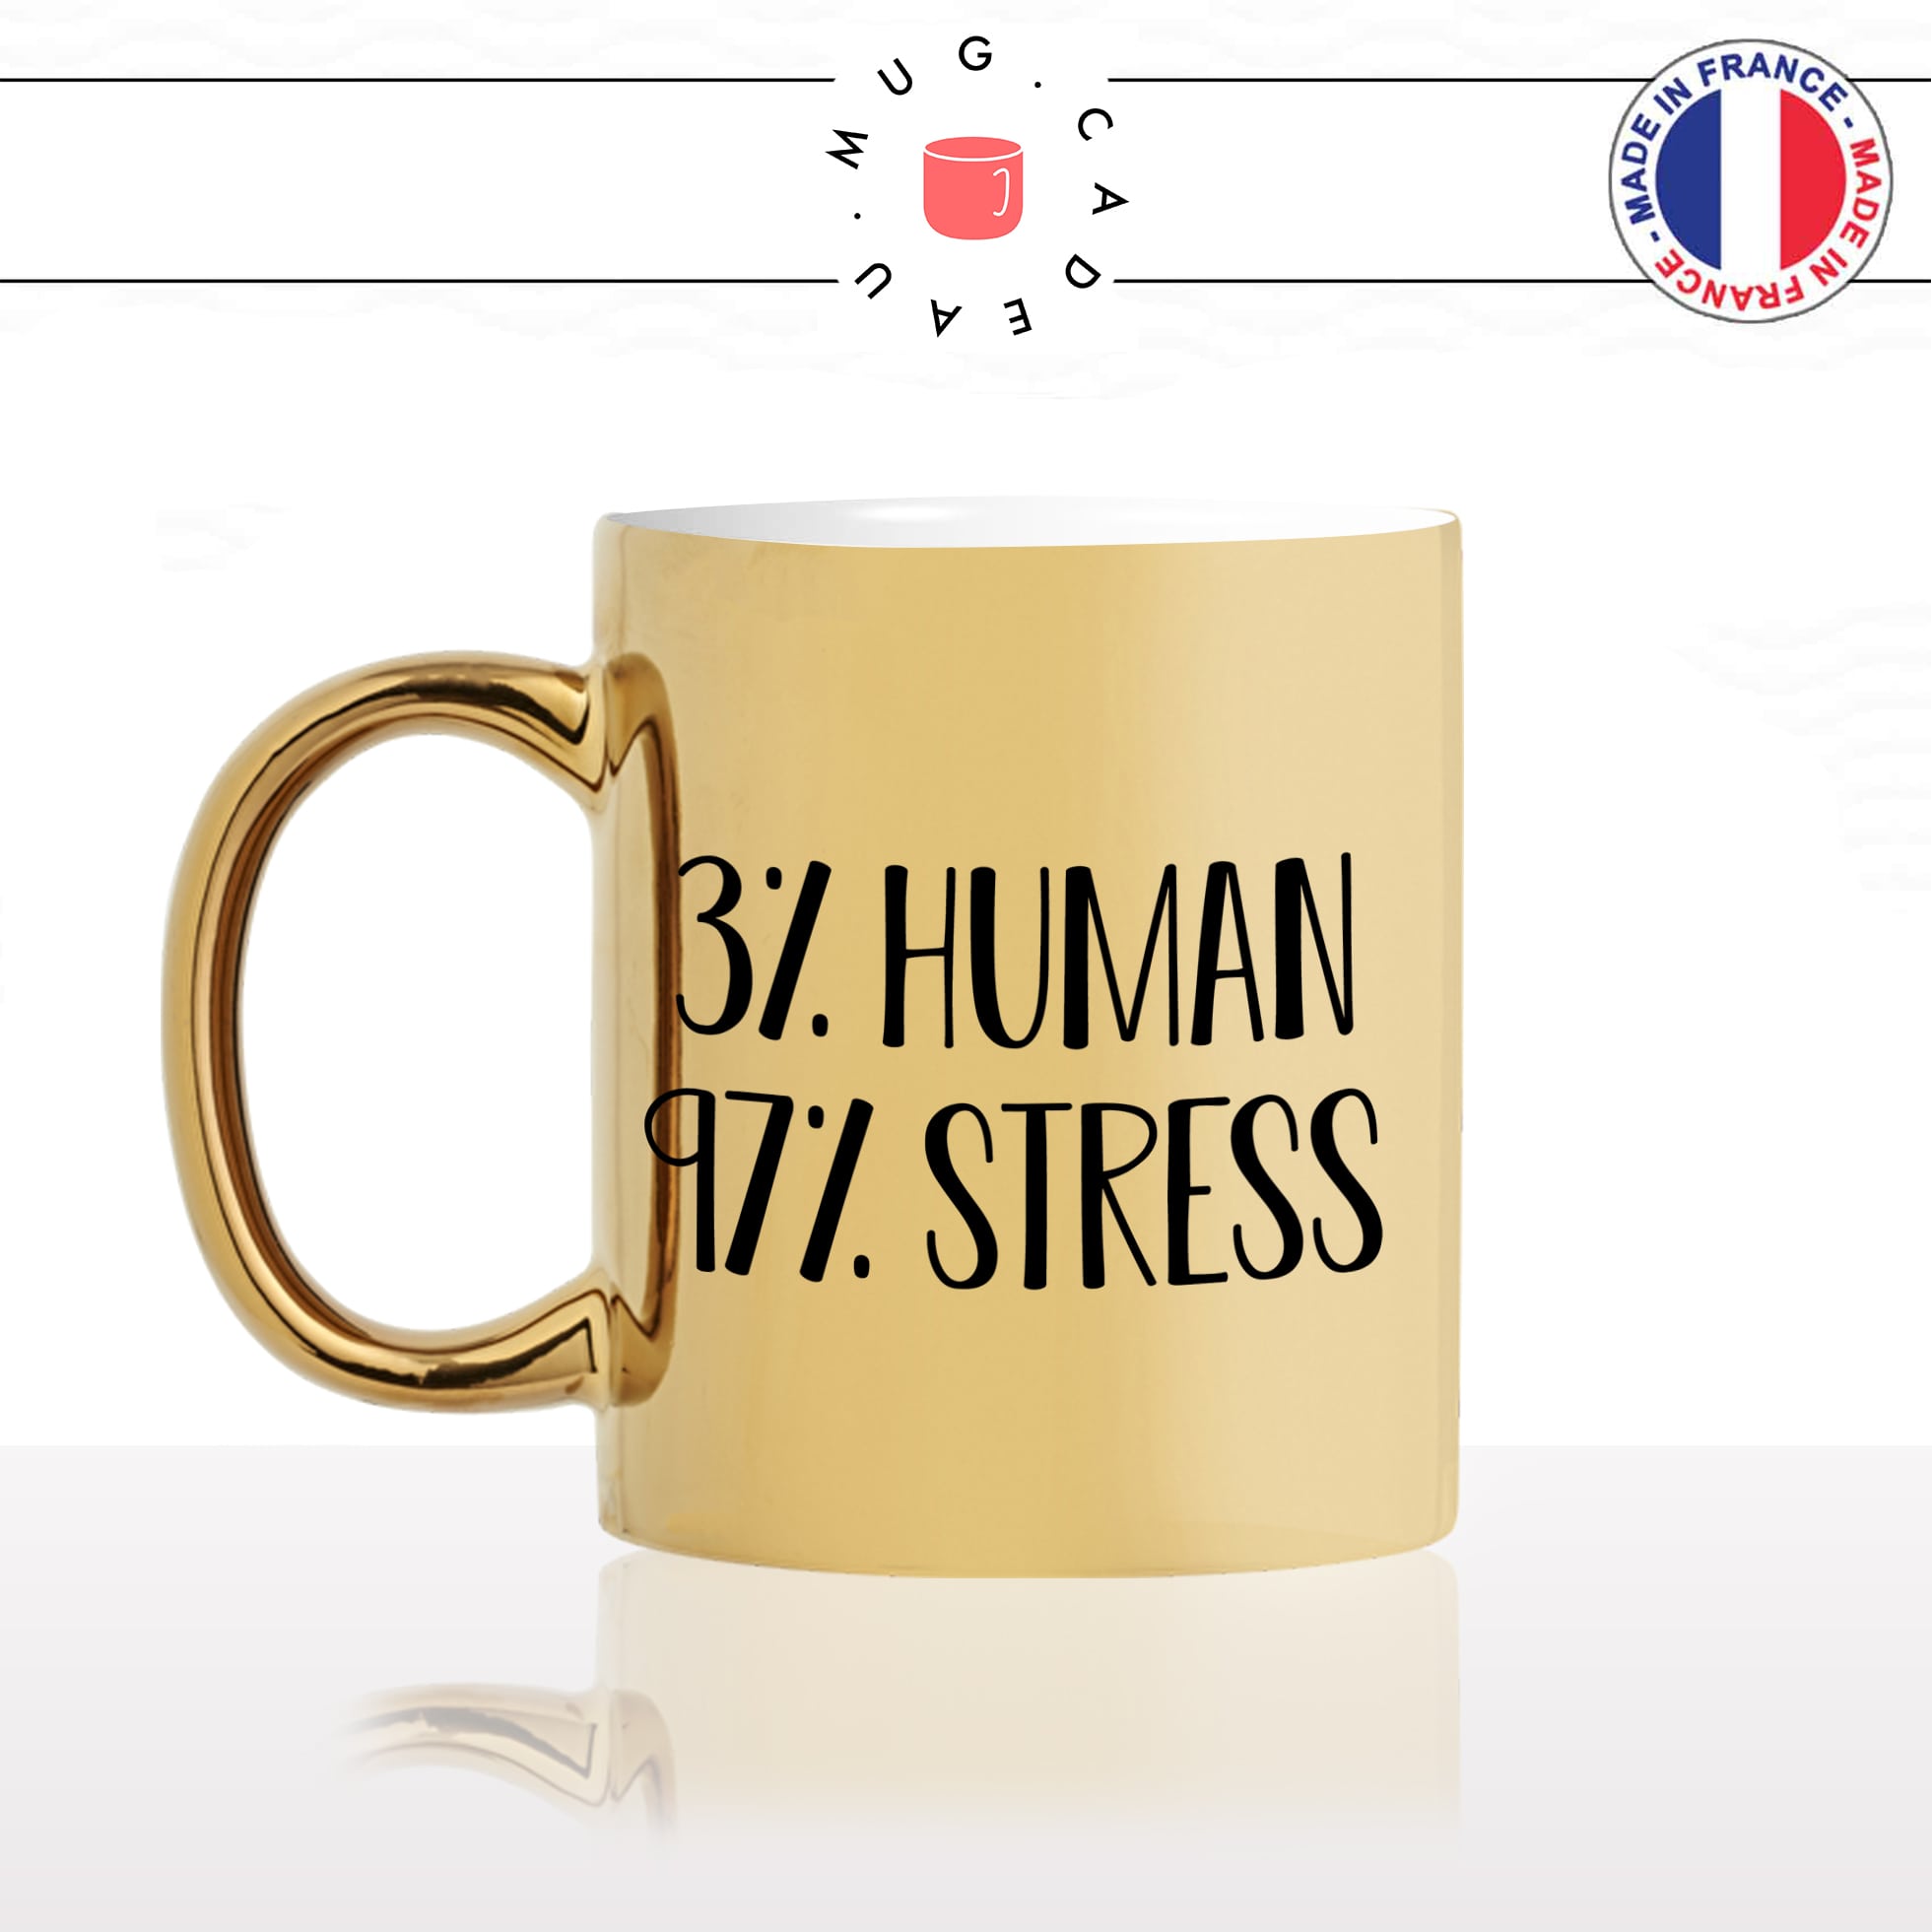 mug-tasse-doré-or-gold-3%-humain-stress-stresser-vacances-voyage-travail-collegue-cool-humour-fun-idée-cadeau-personnalisé-café-thé-min